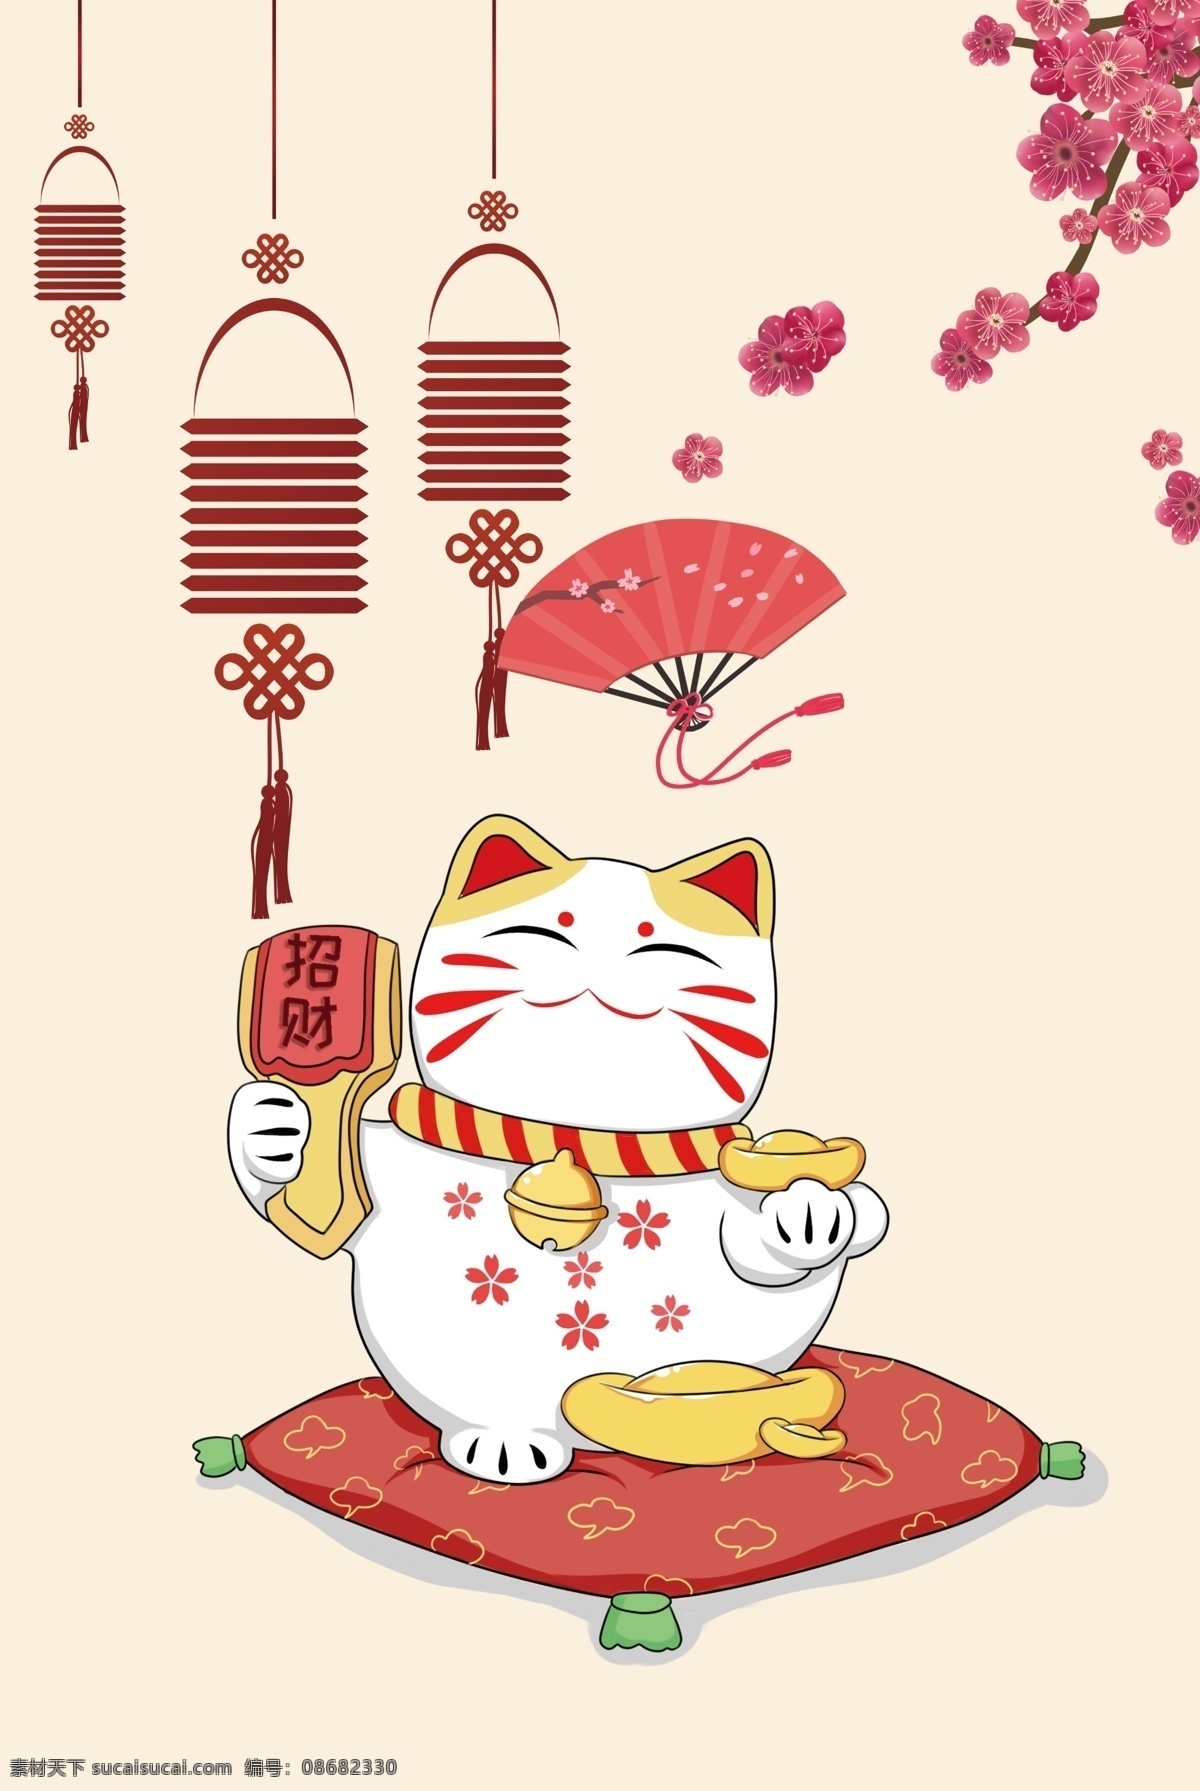 招财猫 猫 猫咪 海报 卡通猫 动物 卡通 日式 日式招财 日式海报